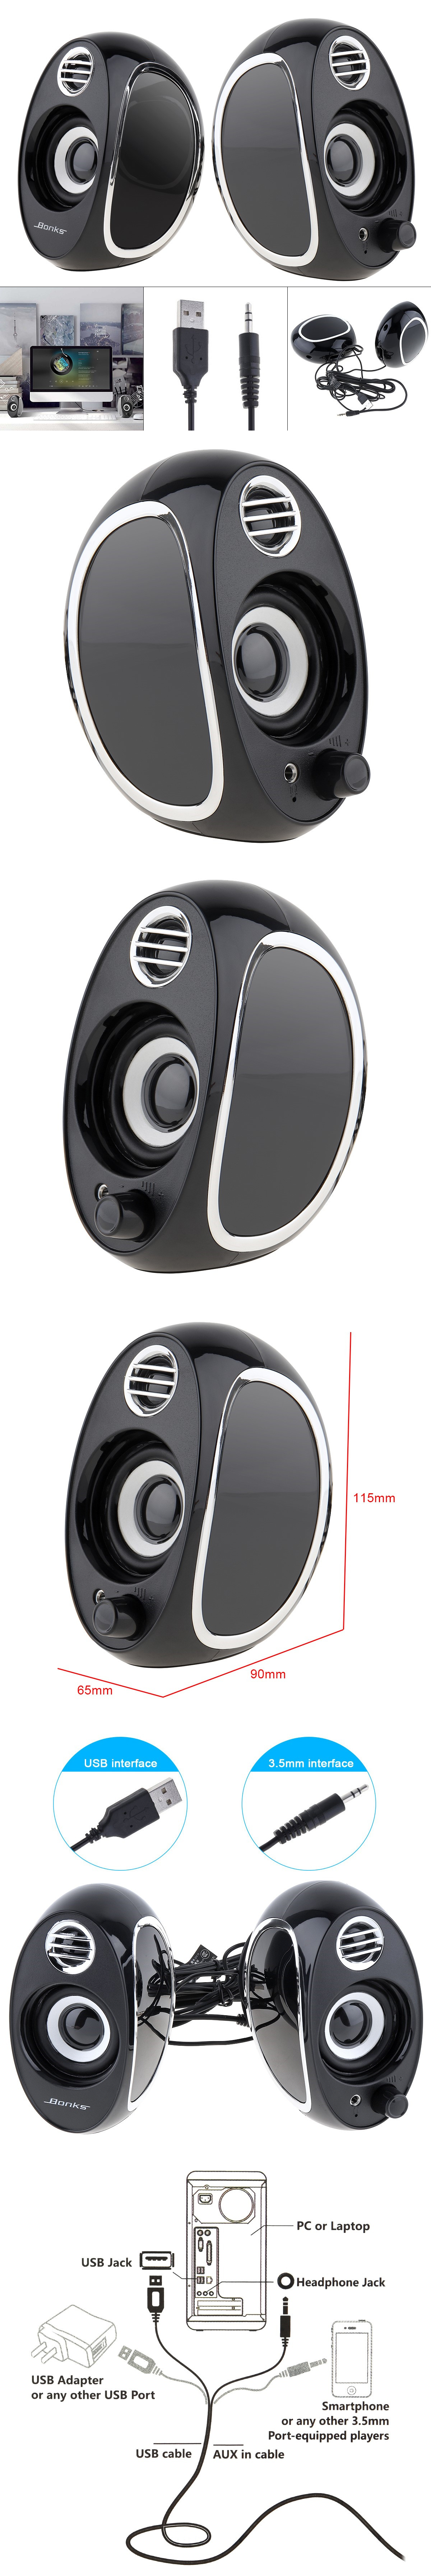 Bonks-DX18-Full-Range-20-Subwoofer-Portable-Computer-Speakers-Mini-Bass-PC-Speaker-Portable-Music-DJ-1632258-1